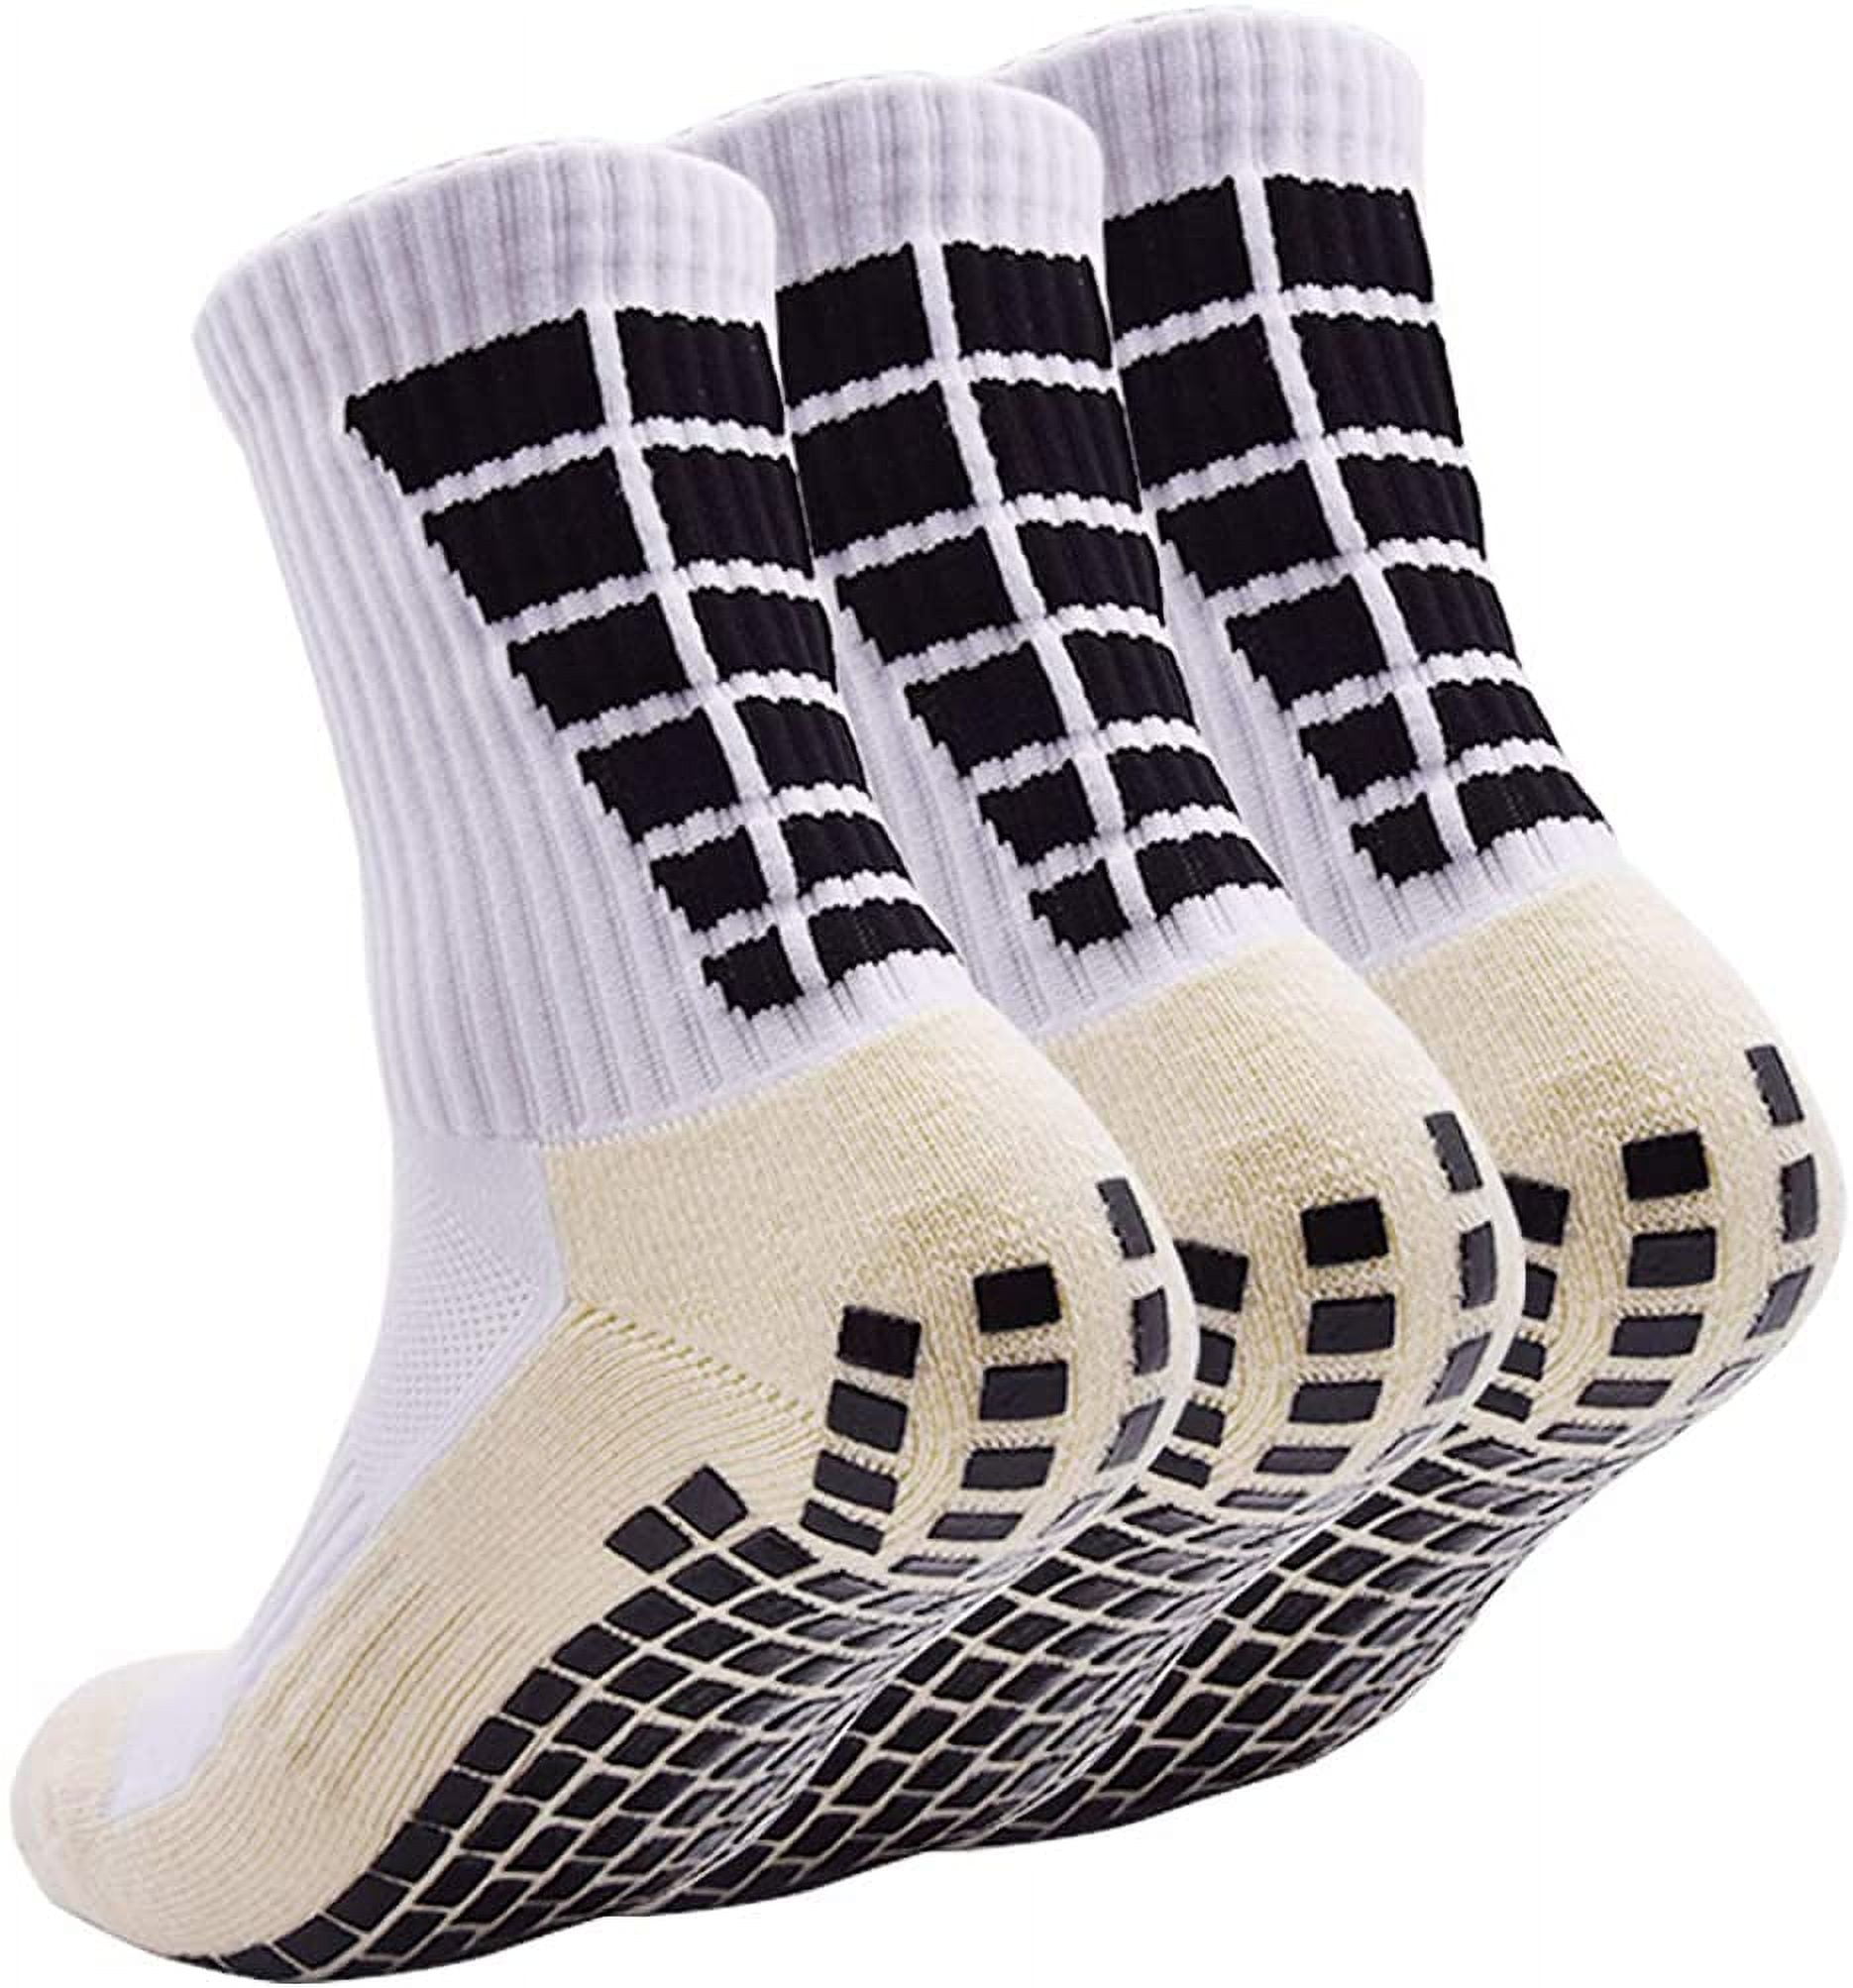 Non Slip Youth Soccer Grip Socks Pilates Athletic Grippy Socks Hospital  Socks with Grips for Men Women